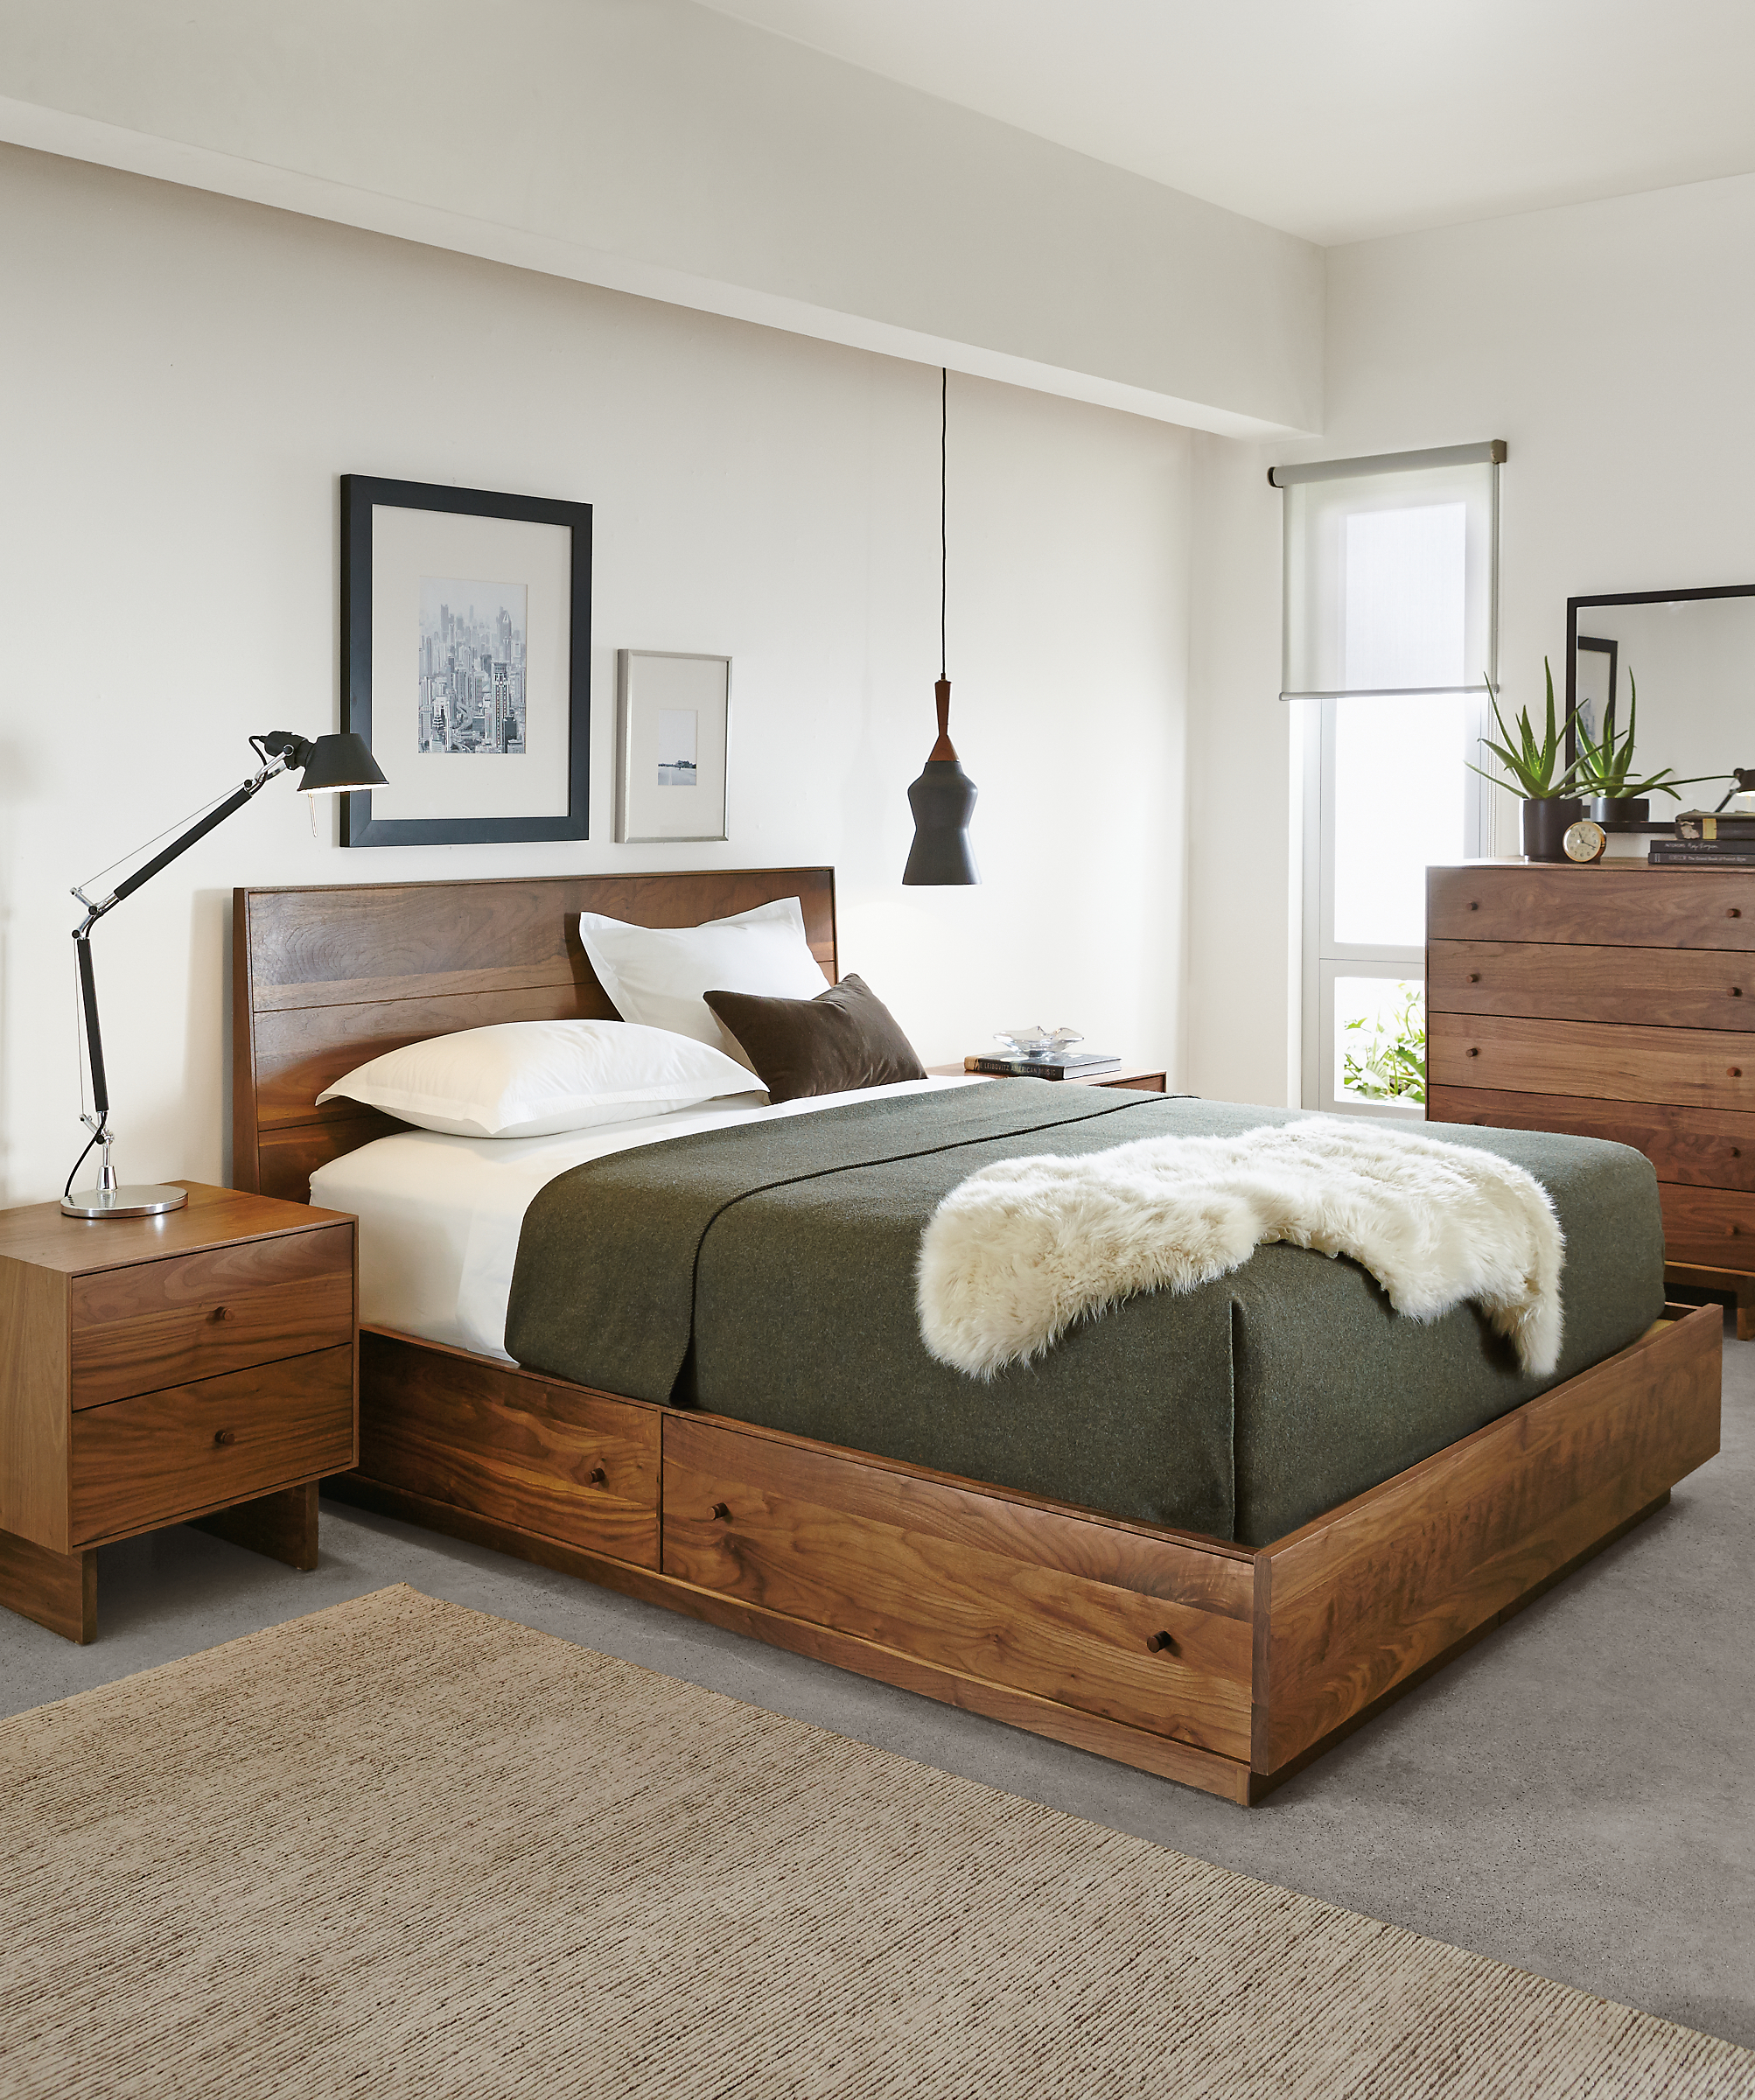 Hudson queen wood storage bed in bedroom.